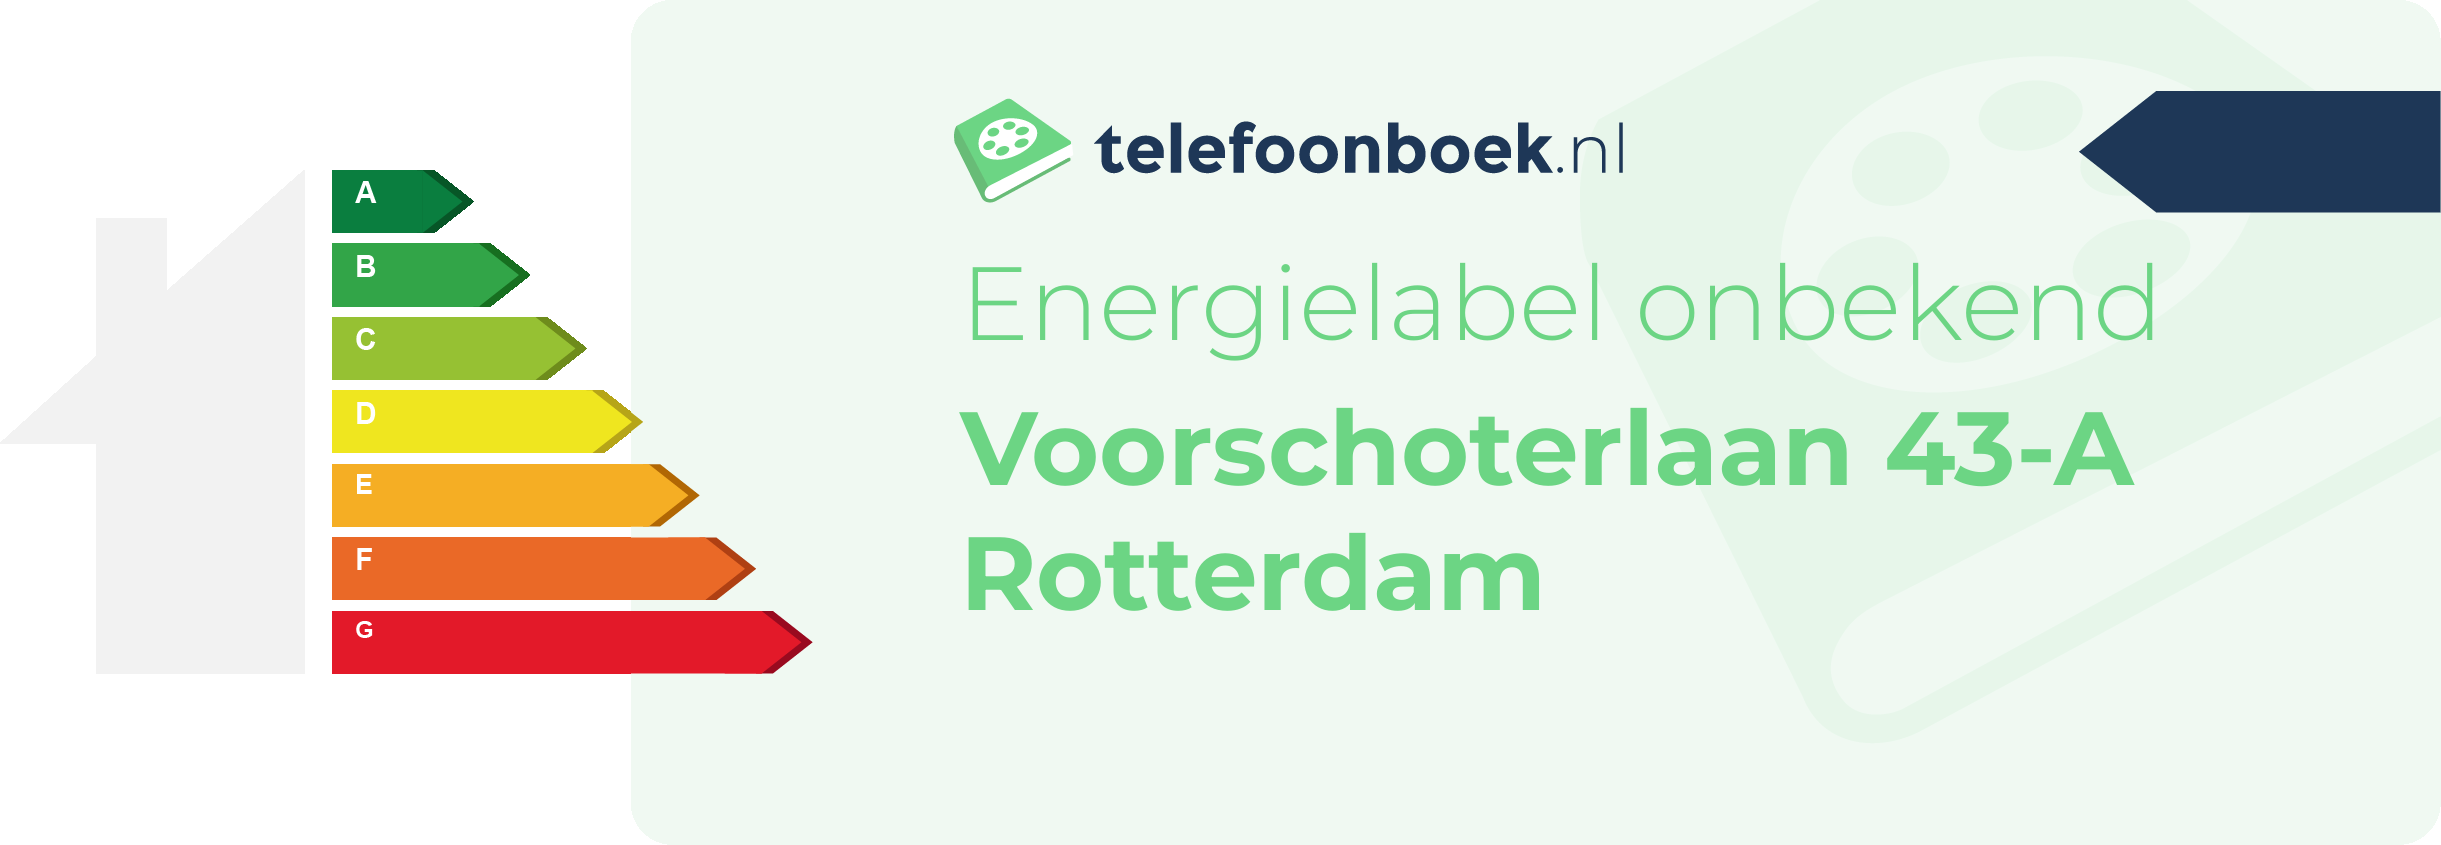 Energielabel Voorschoterlaan 43-A Rotterdam